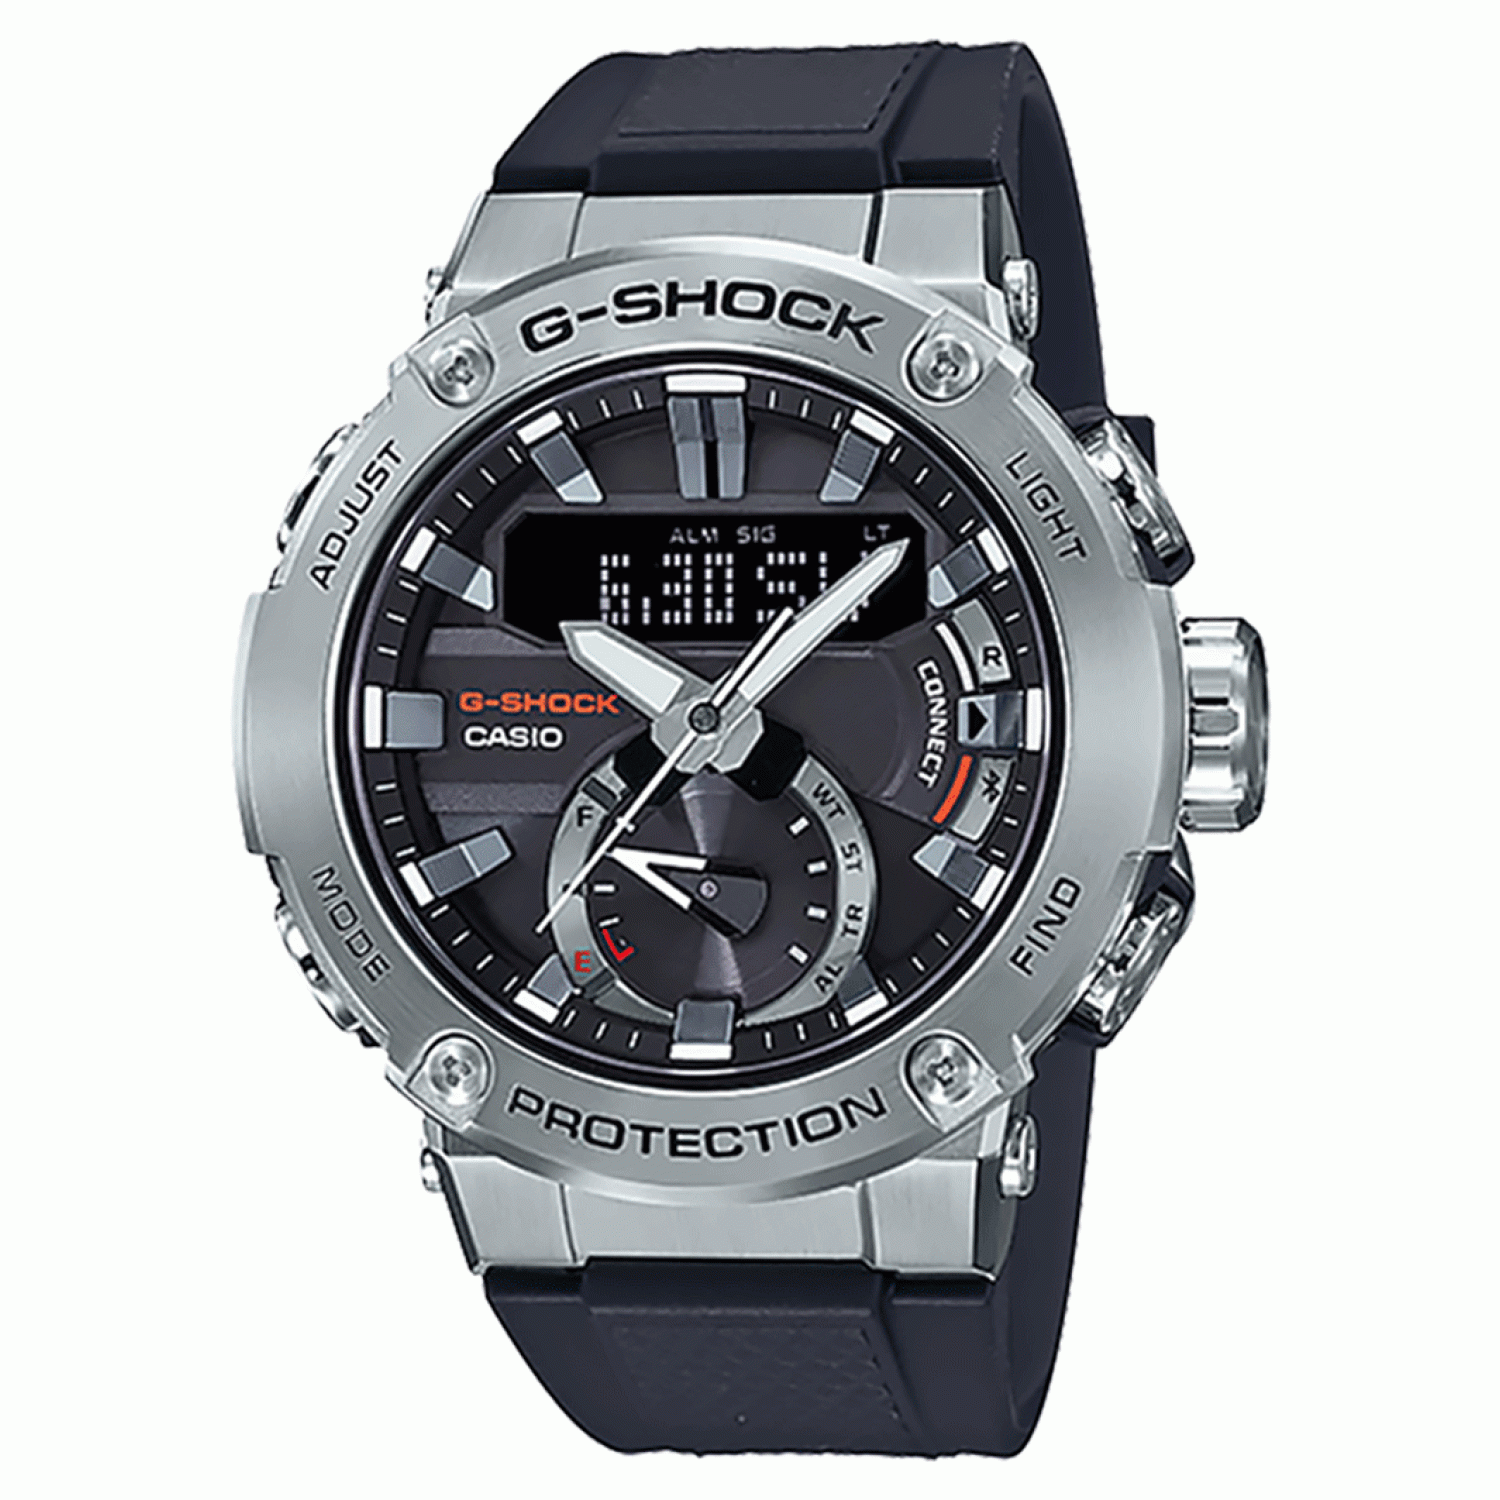 GSTB200-1A G-Shock G-STEEL Watch.casio watches nz sale $699.00